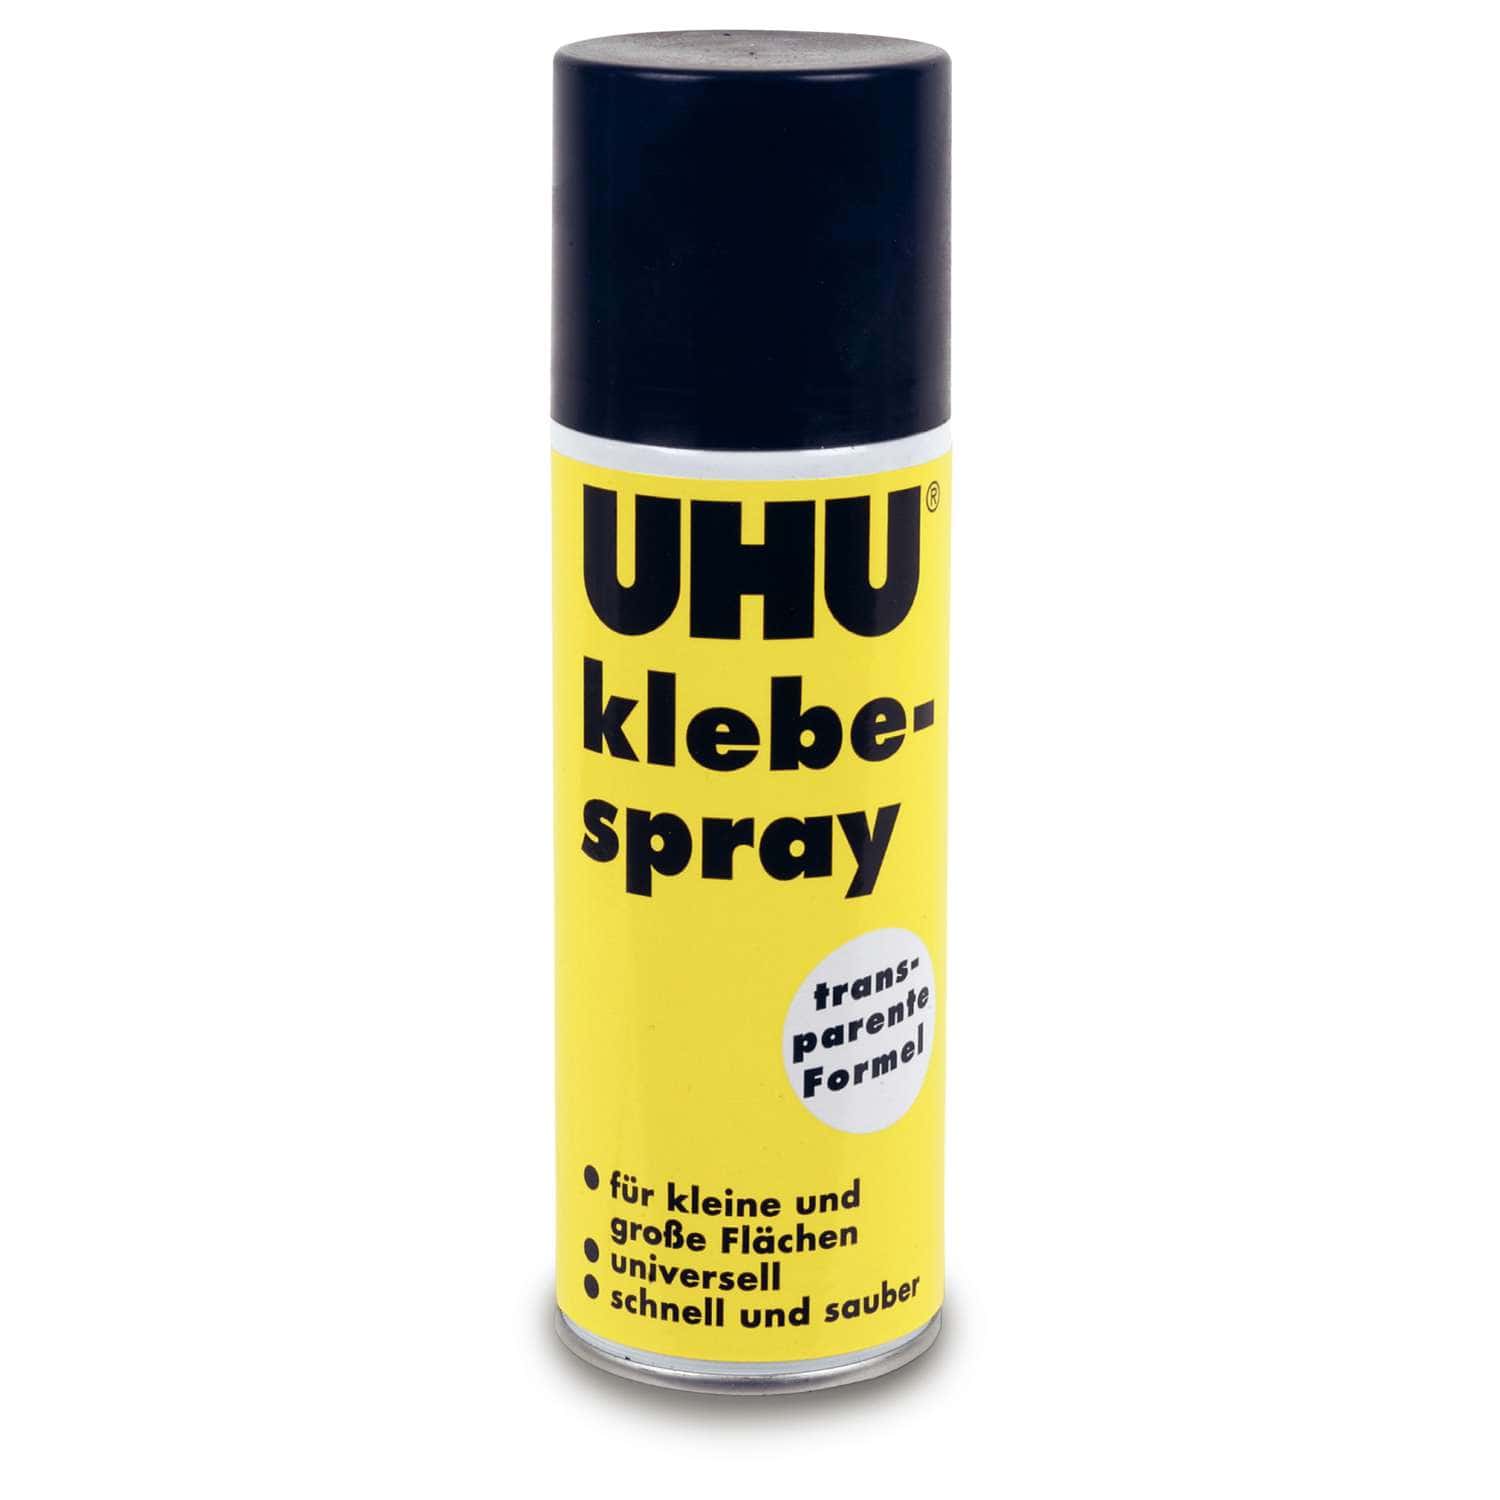 Pegamento en Spray UHU 